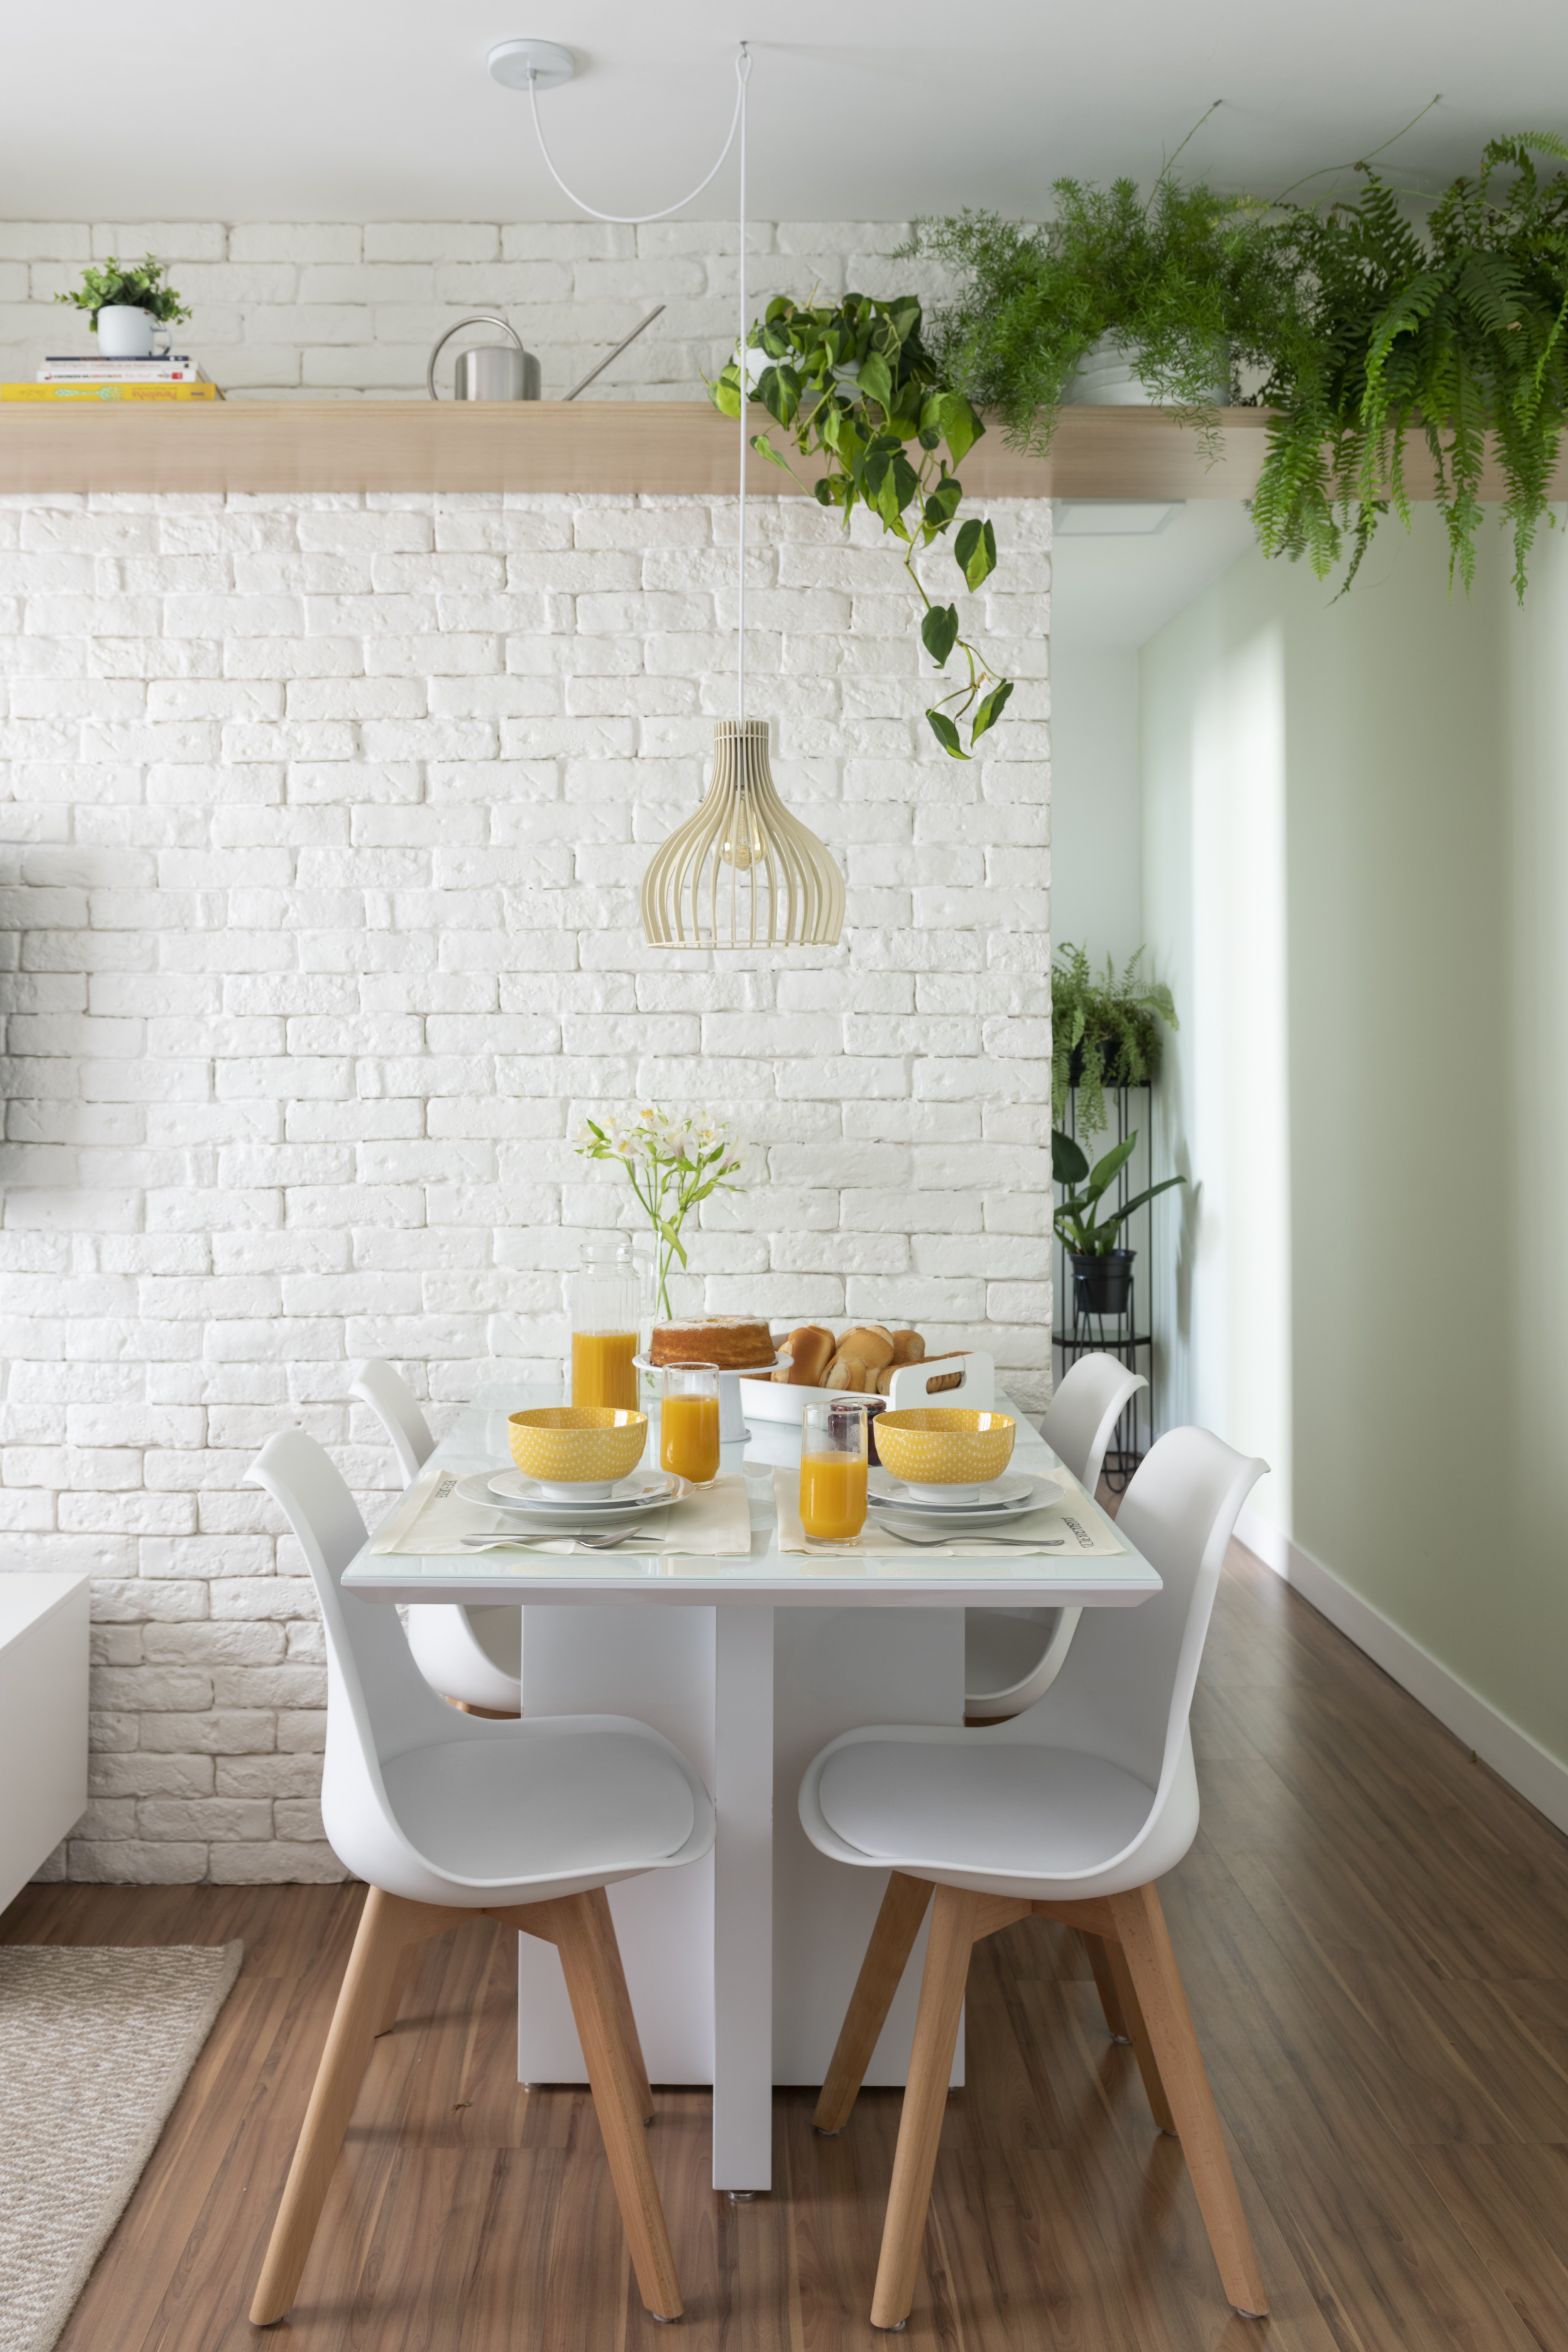 Décor do dia sala de jantar com decoração minimalista e plantas (Foto: Cris Farhat)